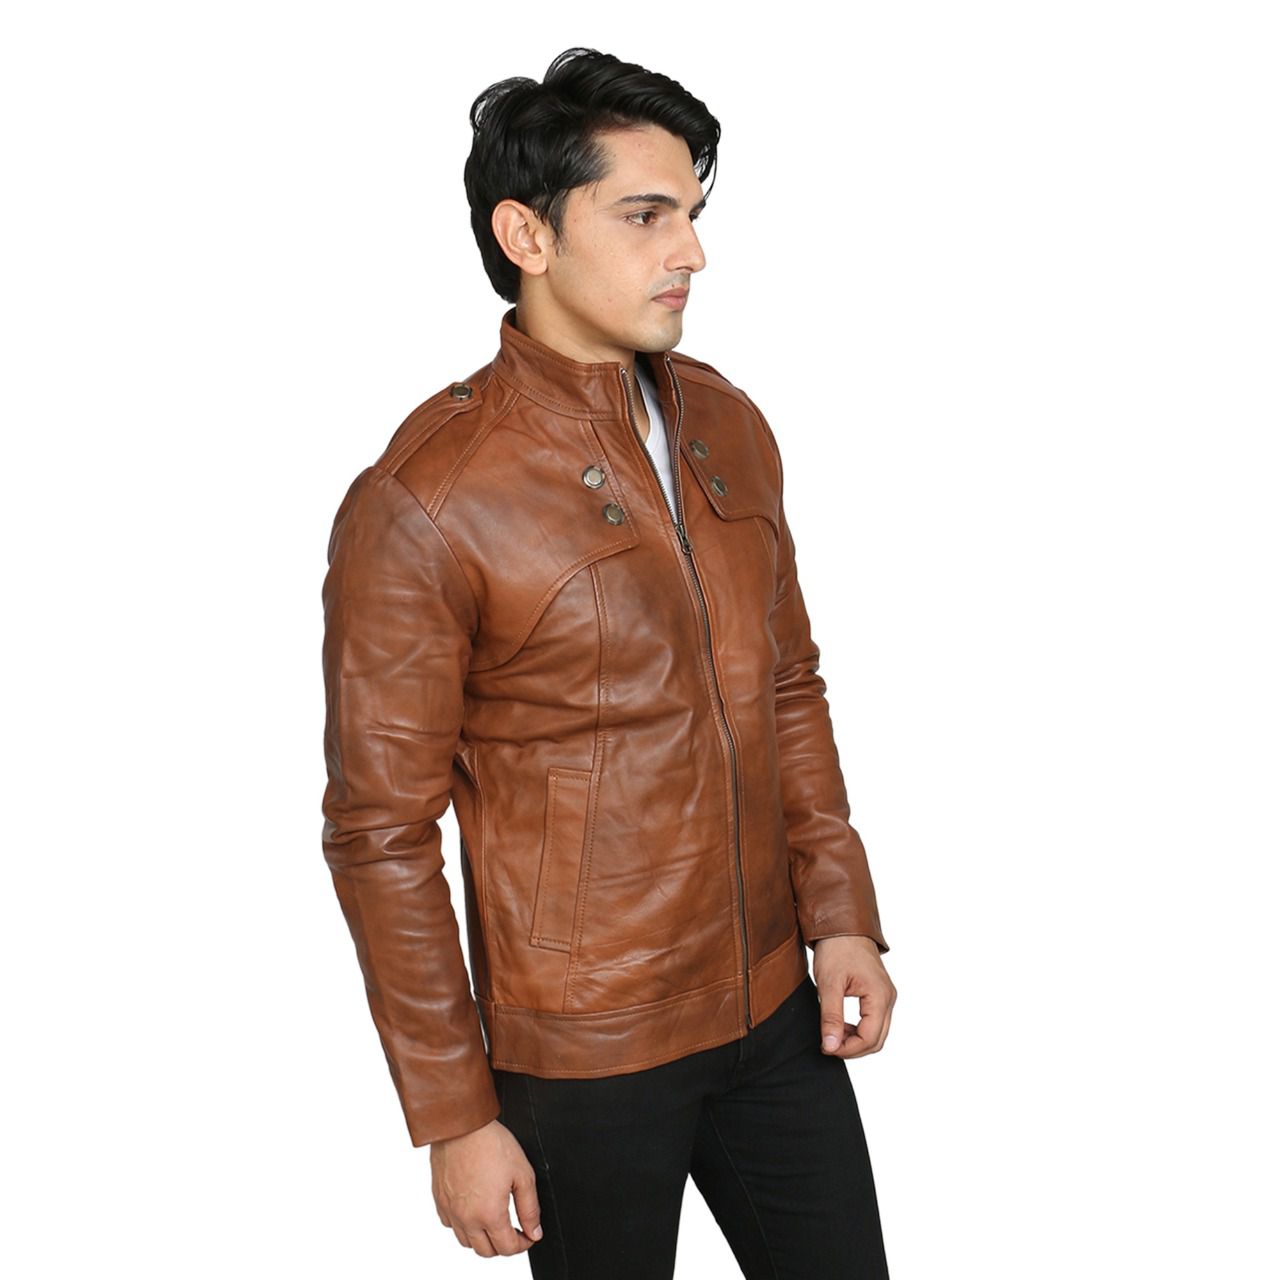 OBANI Brown Leather Jacket - Buy OBANI Brown Leather Jacket Online at ...